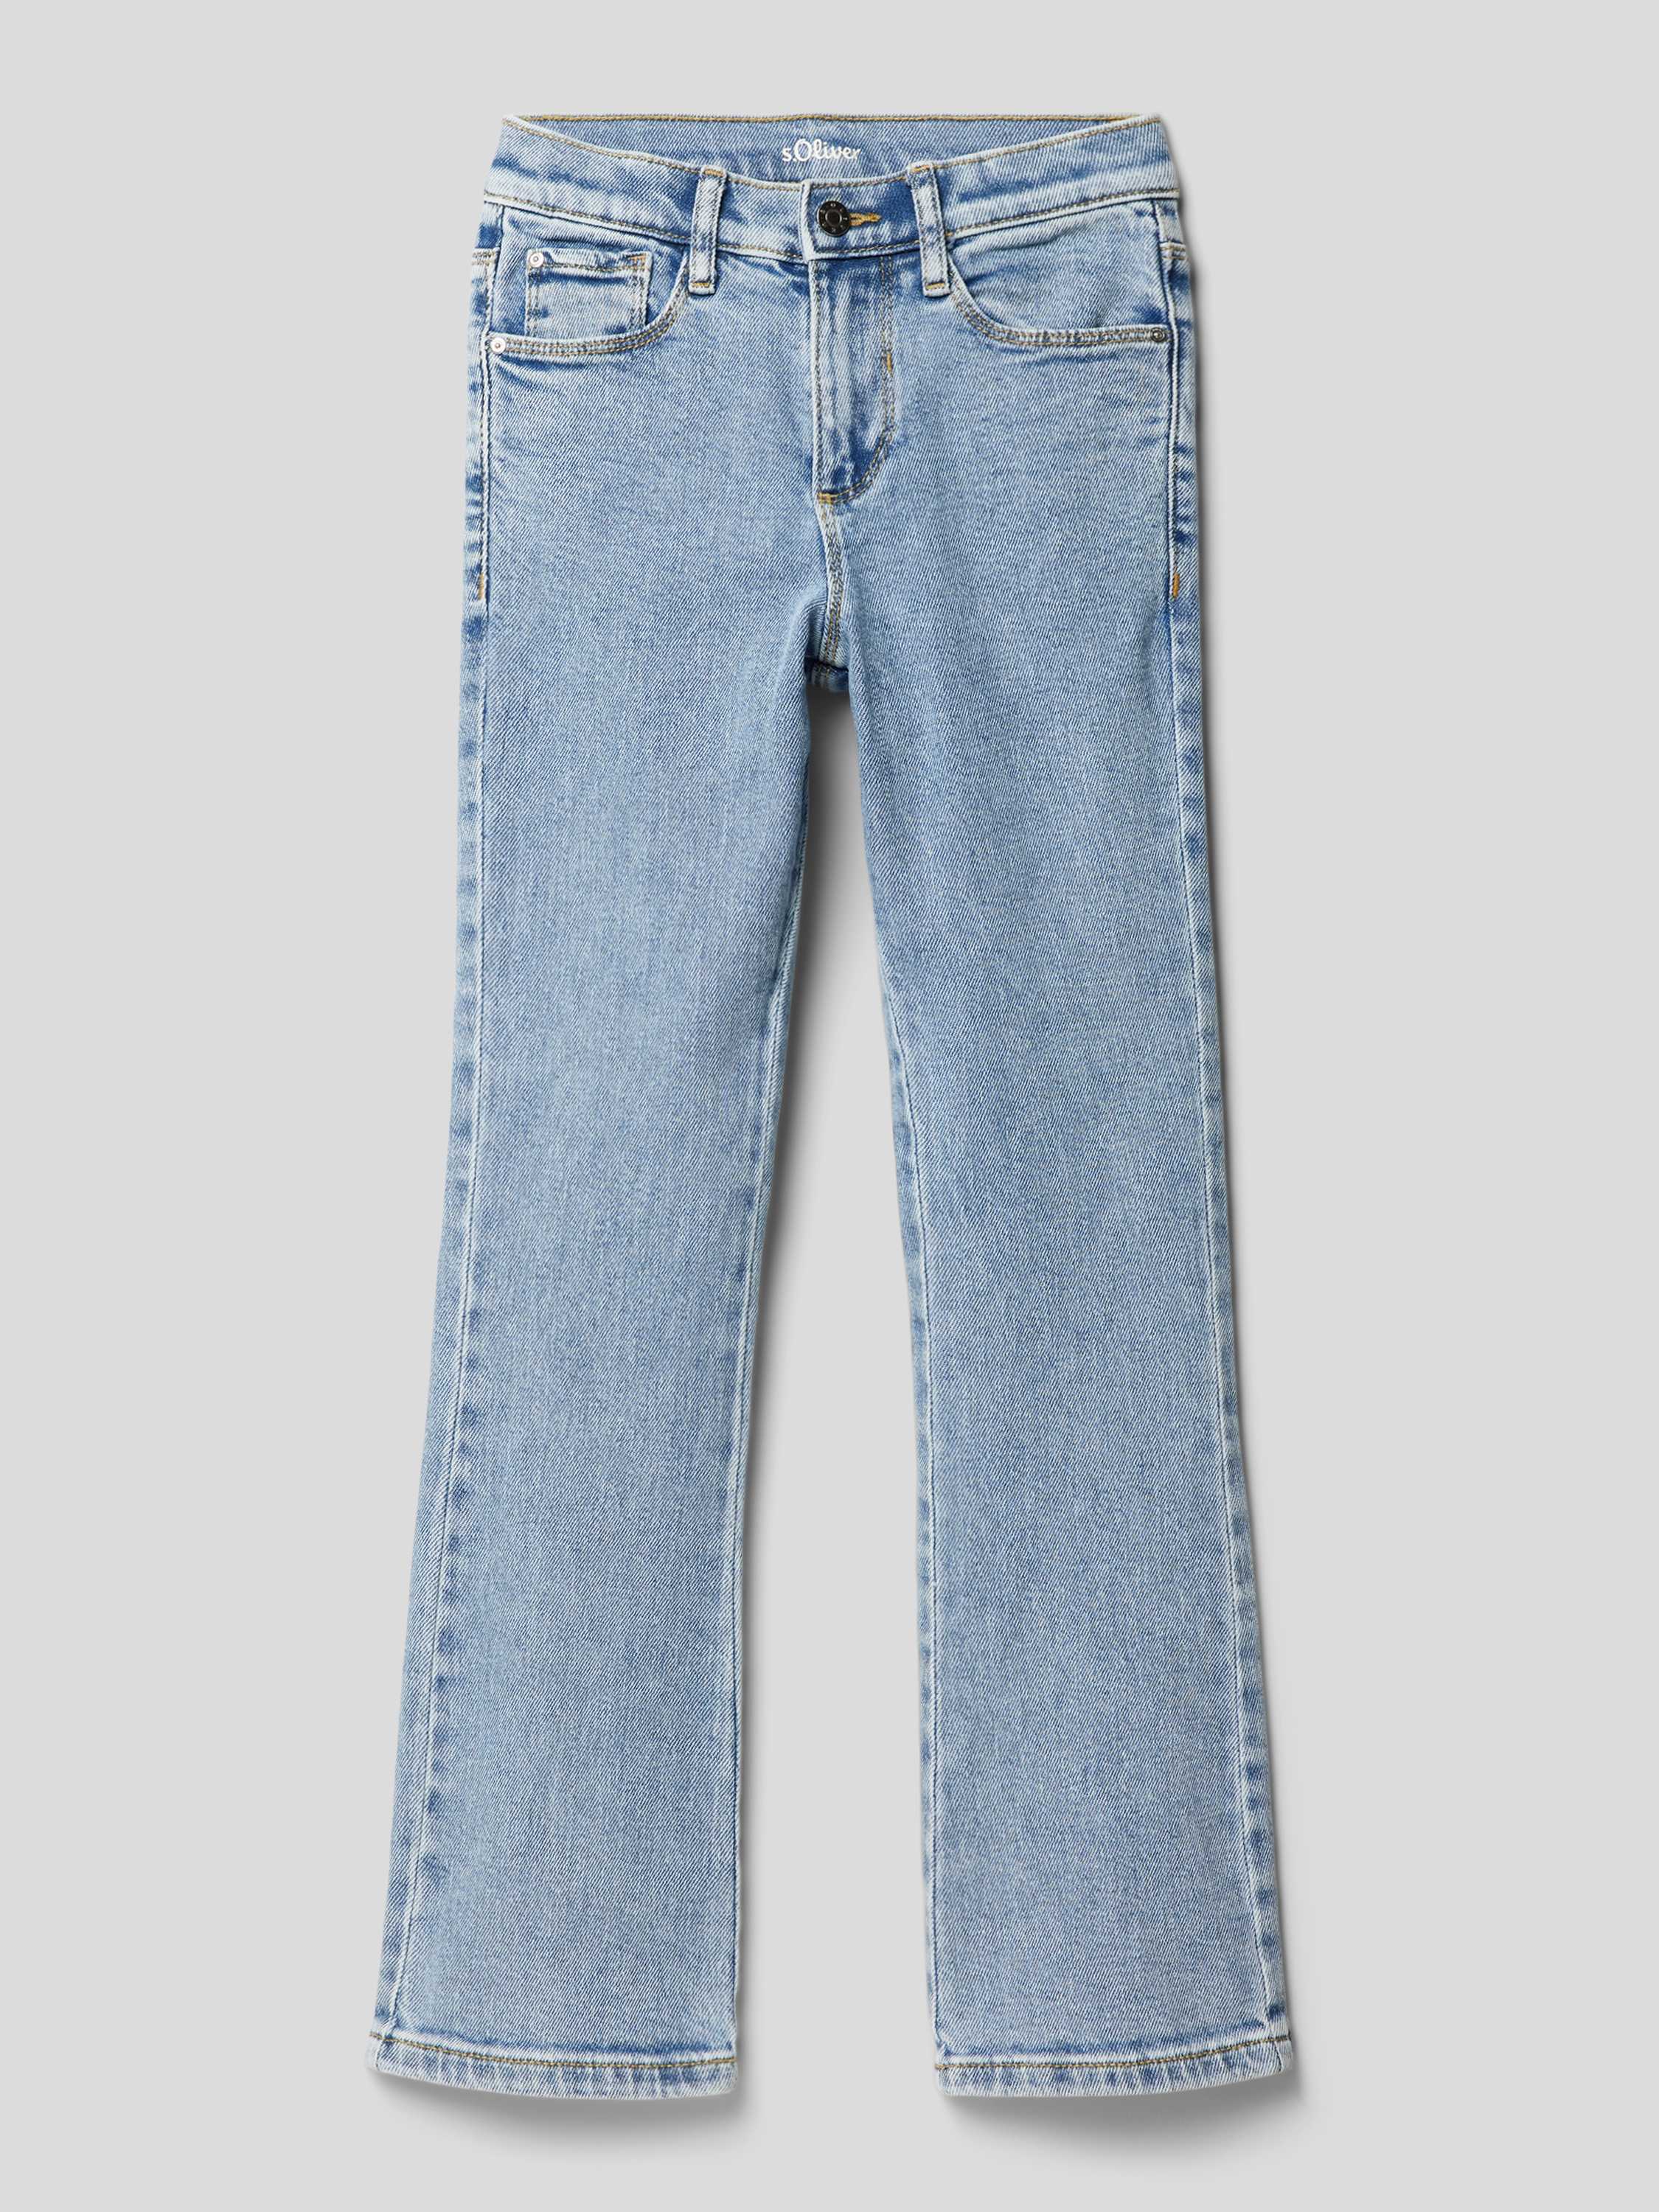 S.Oliver flared jeans light denim Blauw Meisjes Stretchdenim Effen 152